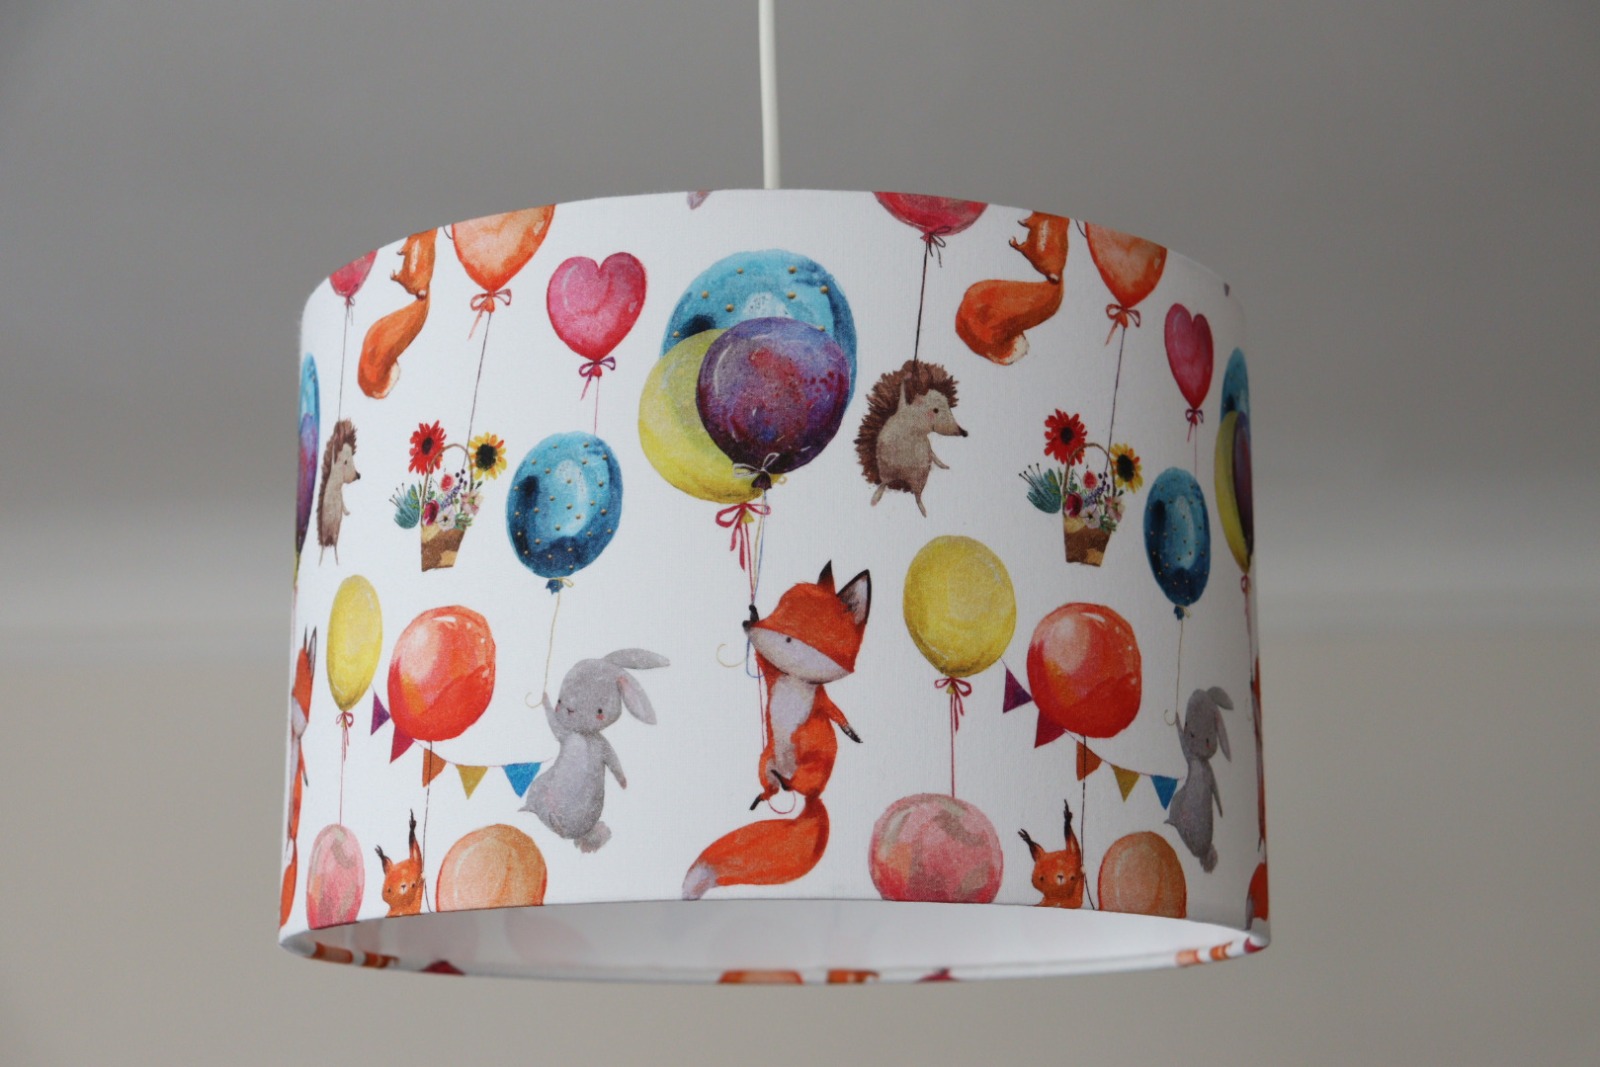 Lampenschirm Kinderzimmer Füchse und Luftballons